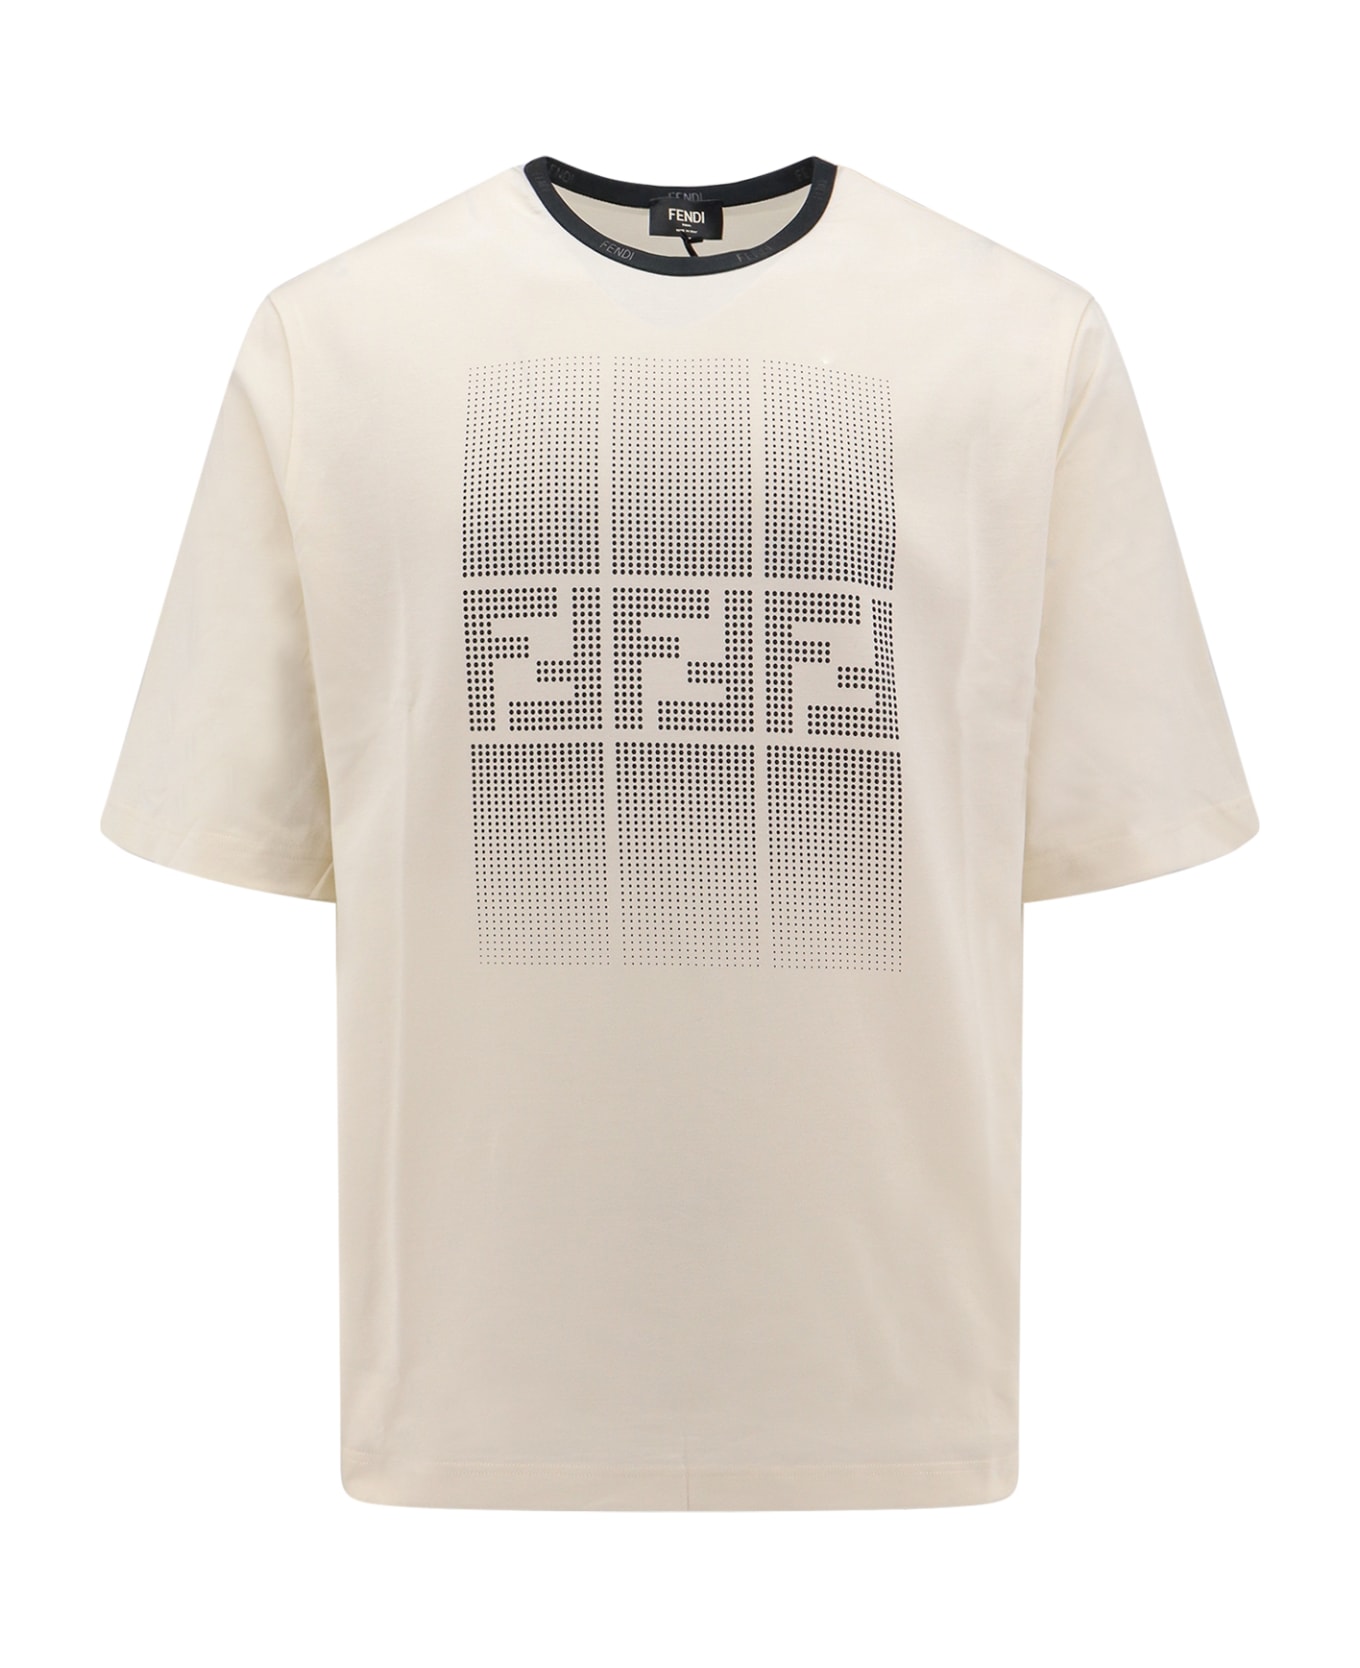 Fendi Naturale T-shirt - White シャツ